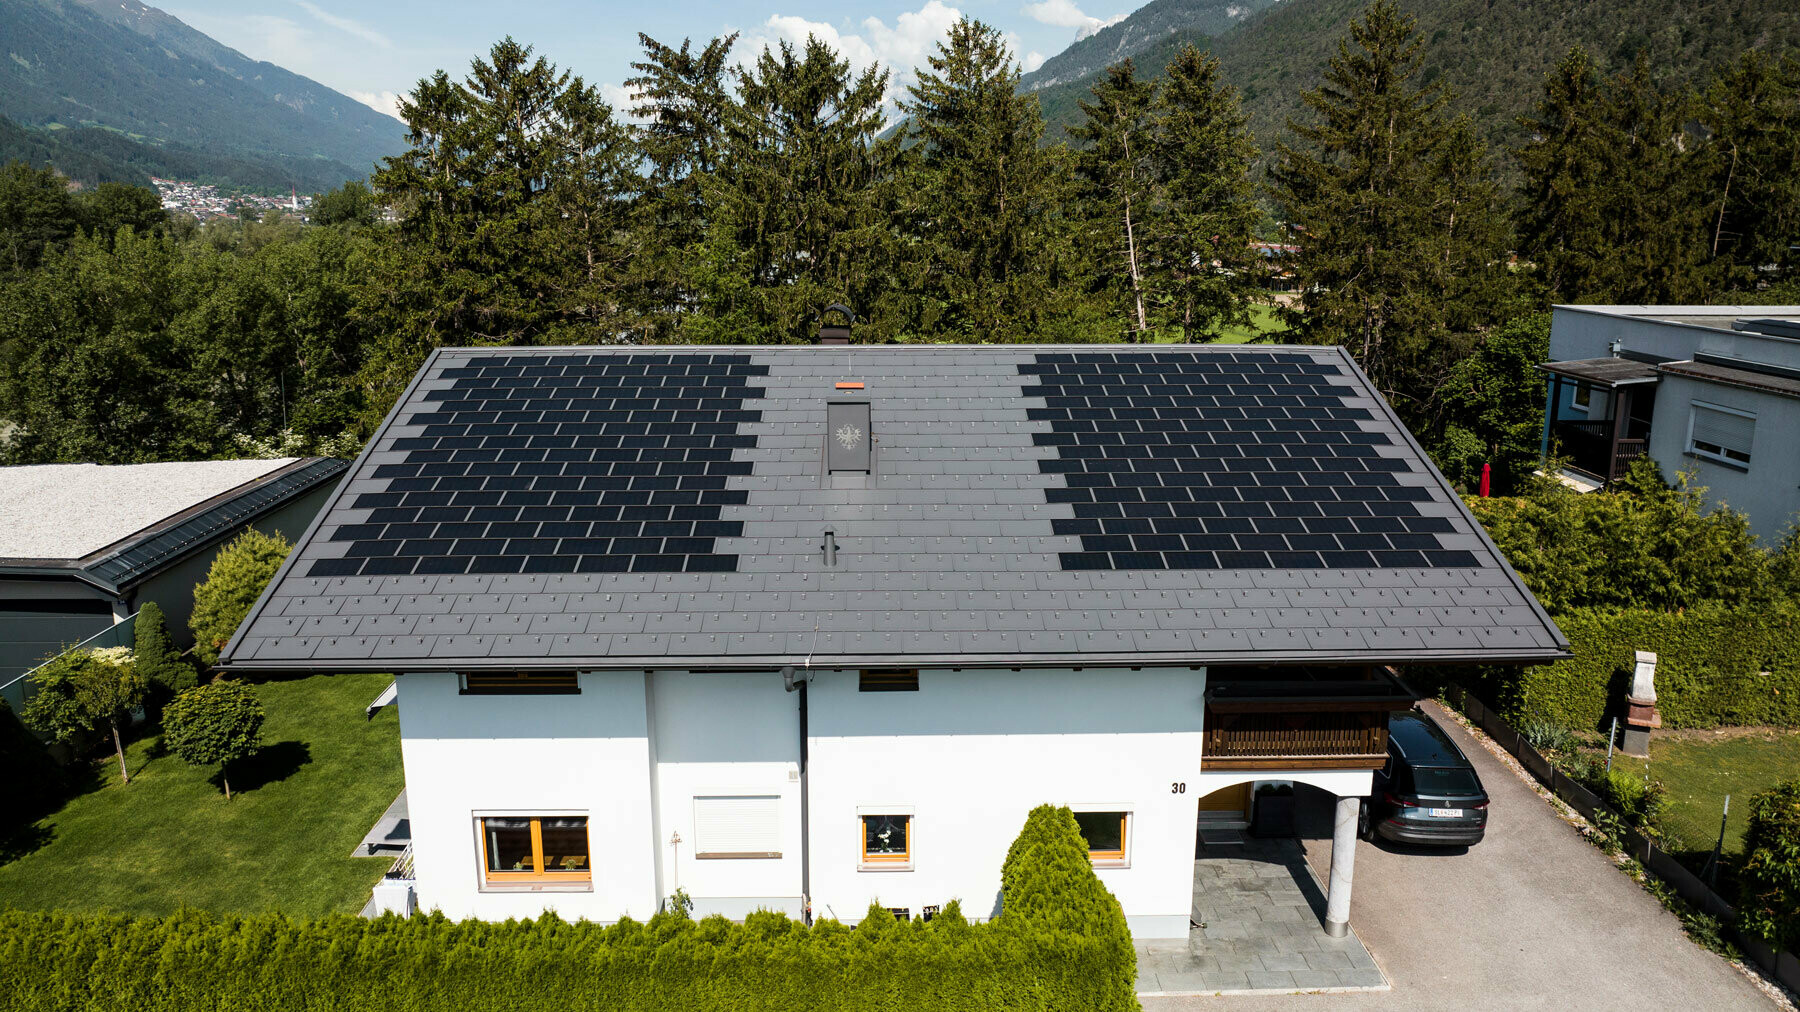 Rodinný dům pokrytý malým integrovaným solárním panelem SDP se střešním panelem R.16 v barvě P.10 tmavě šedé v idylickém prostředí venkova.